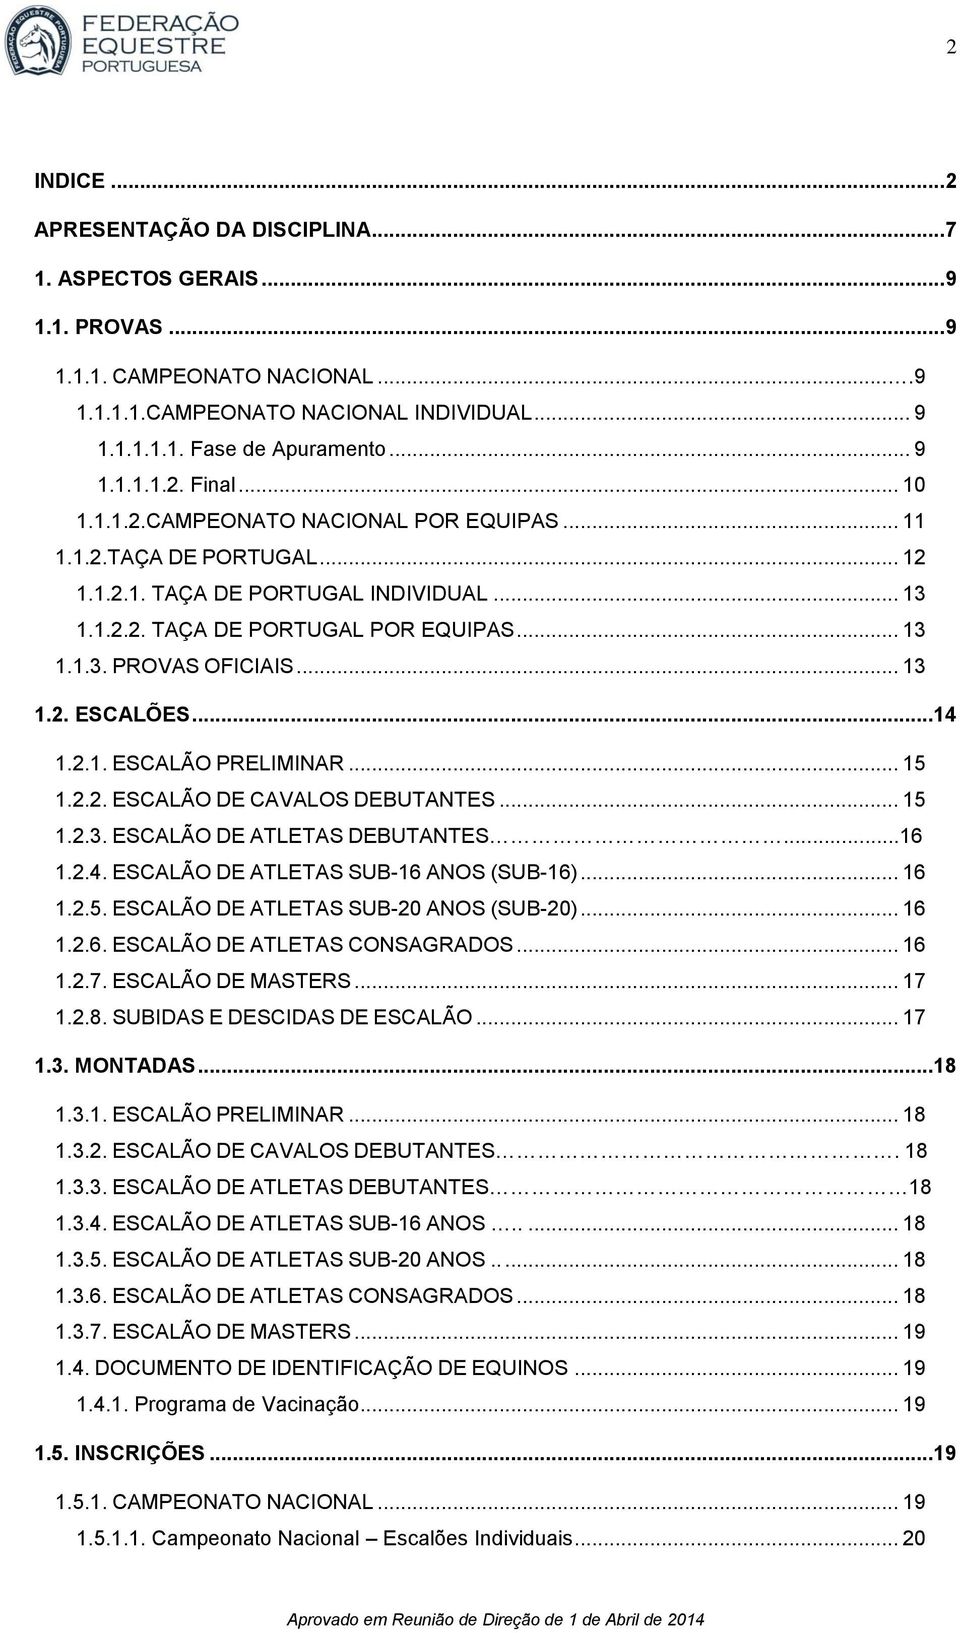 ..14 1.2.1. ESCALÃO PRELIMINAR... 15 1.2.2. ESCALÃO DE CAVALOS DEBUTANTES... 15 1.2.3. ESCALÃO DE ATLETAS DEBUTANTES...16 1.2.4. ESCALÃO DE ATLETAS SUB-16 ANOS (SUB-16)... 16 1.2.5. ESCALÃO DE ATLETAS SUB-20 ANOS (SUB-20).